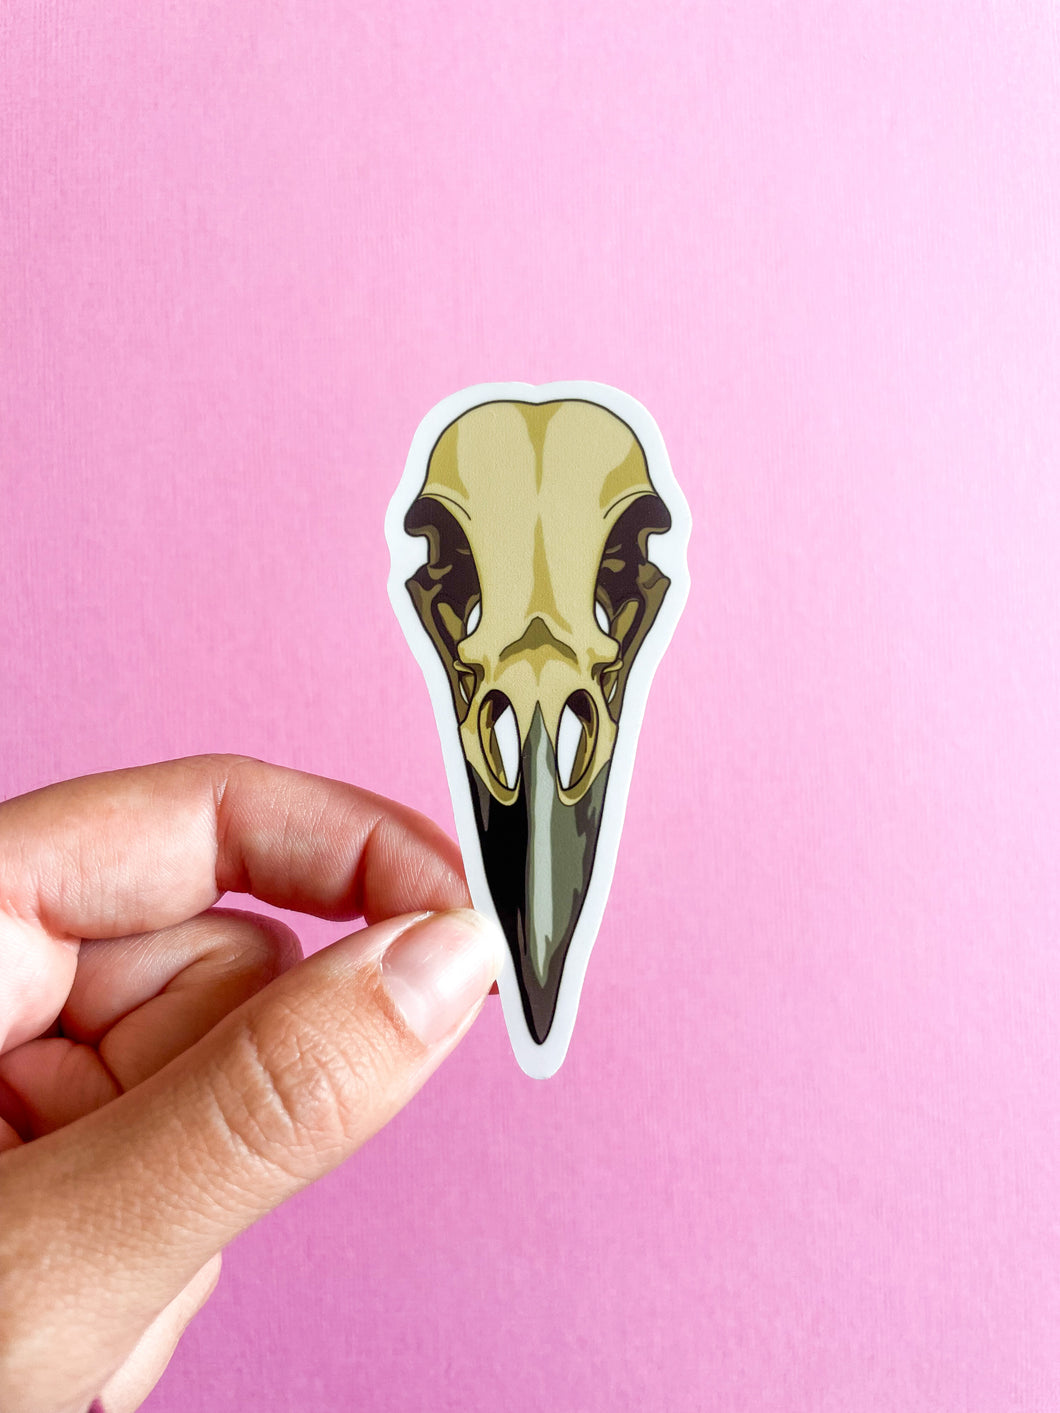 Raven Skull Sticker